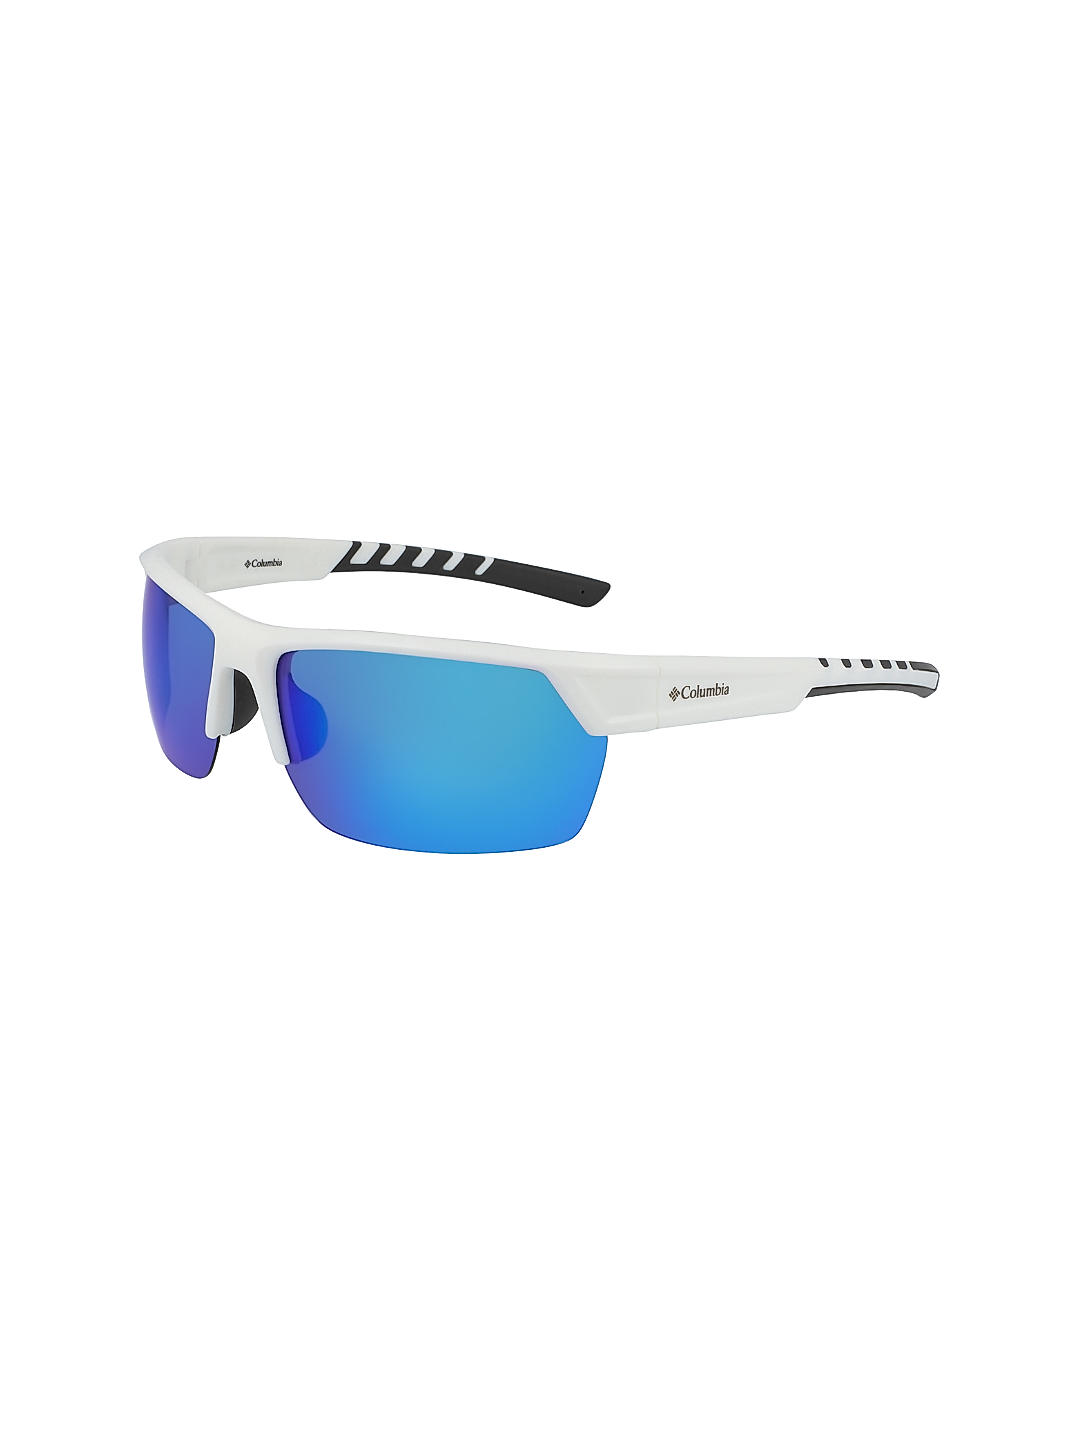 Buy White Peak Racer Sunglasses for Men Online at Columbia